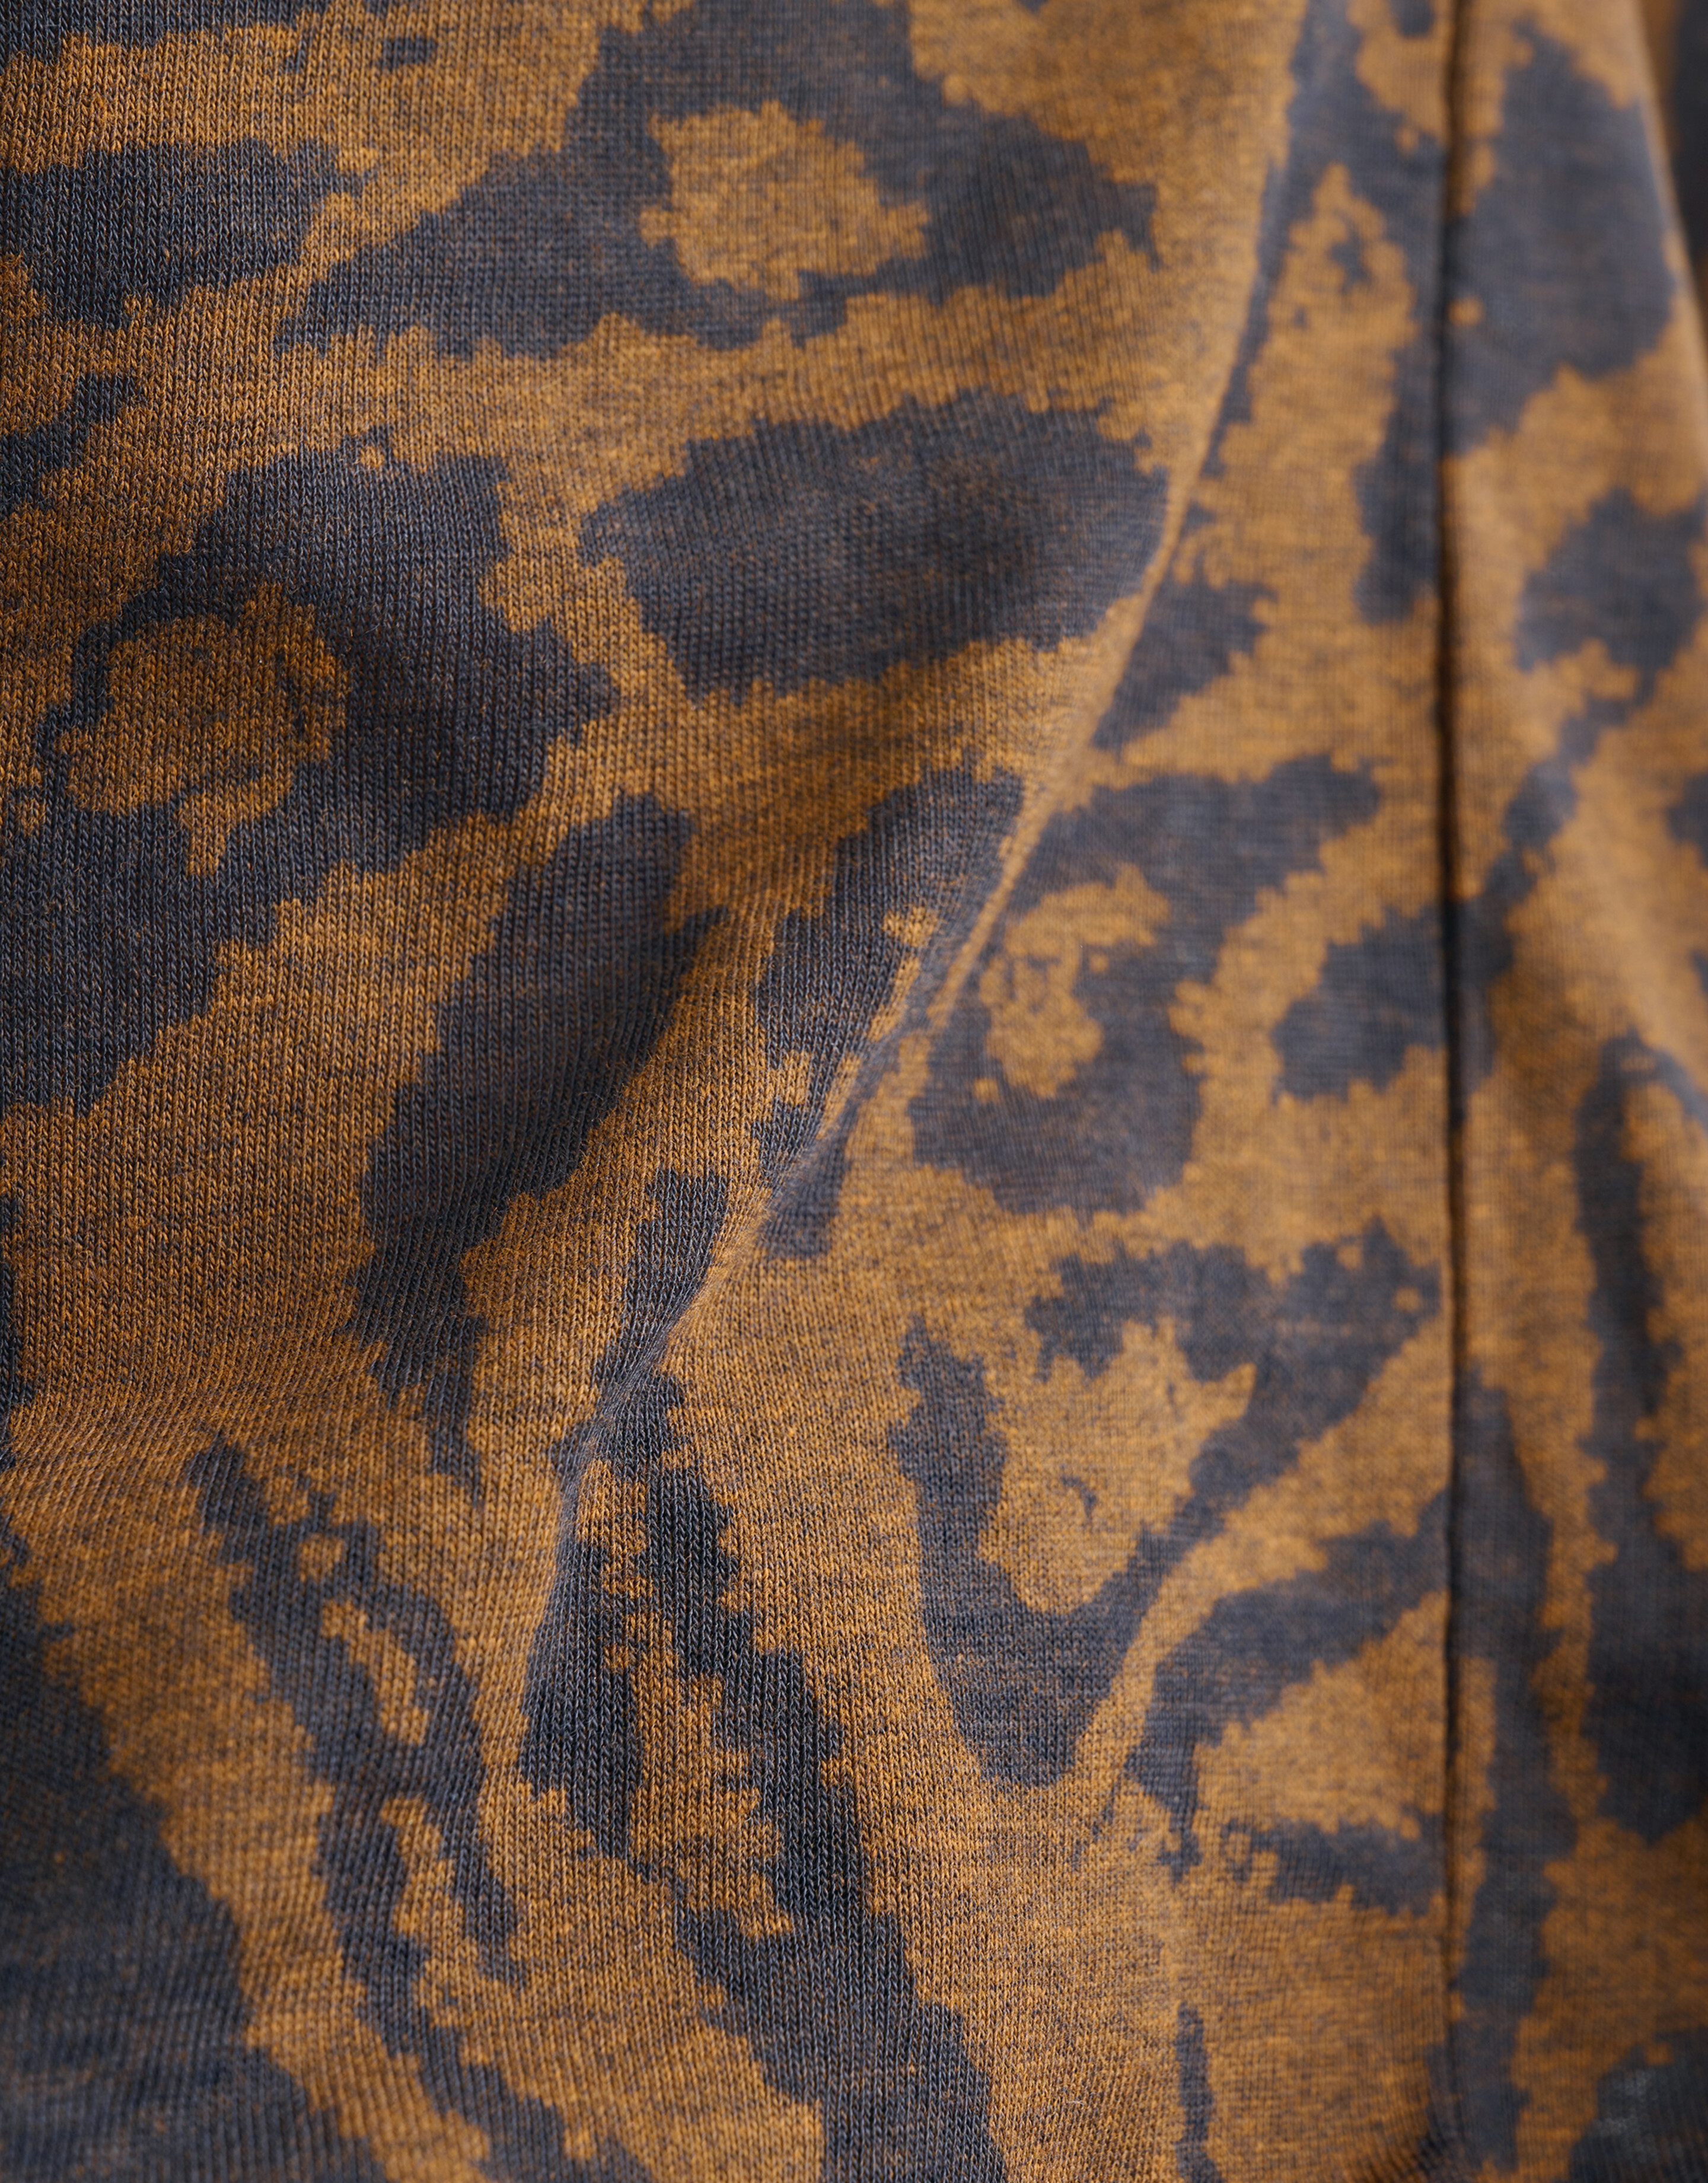 Leopardenmuster-T-Shirt mit V-Ausschnitt Braun SHOEBY WOMEN